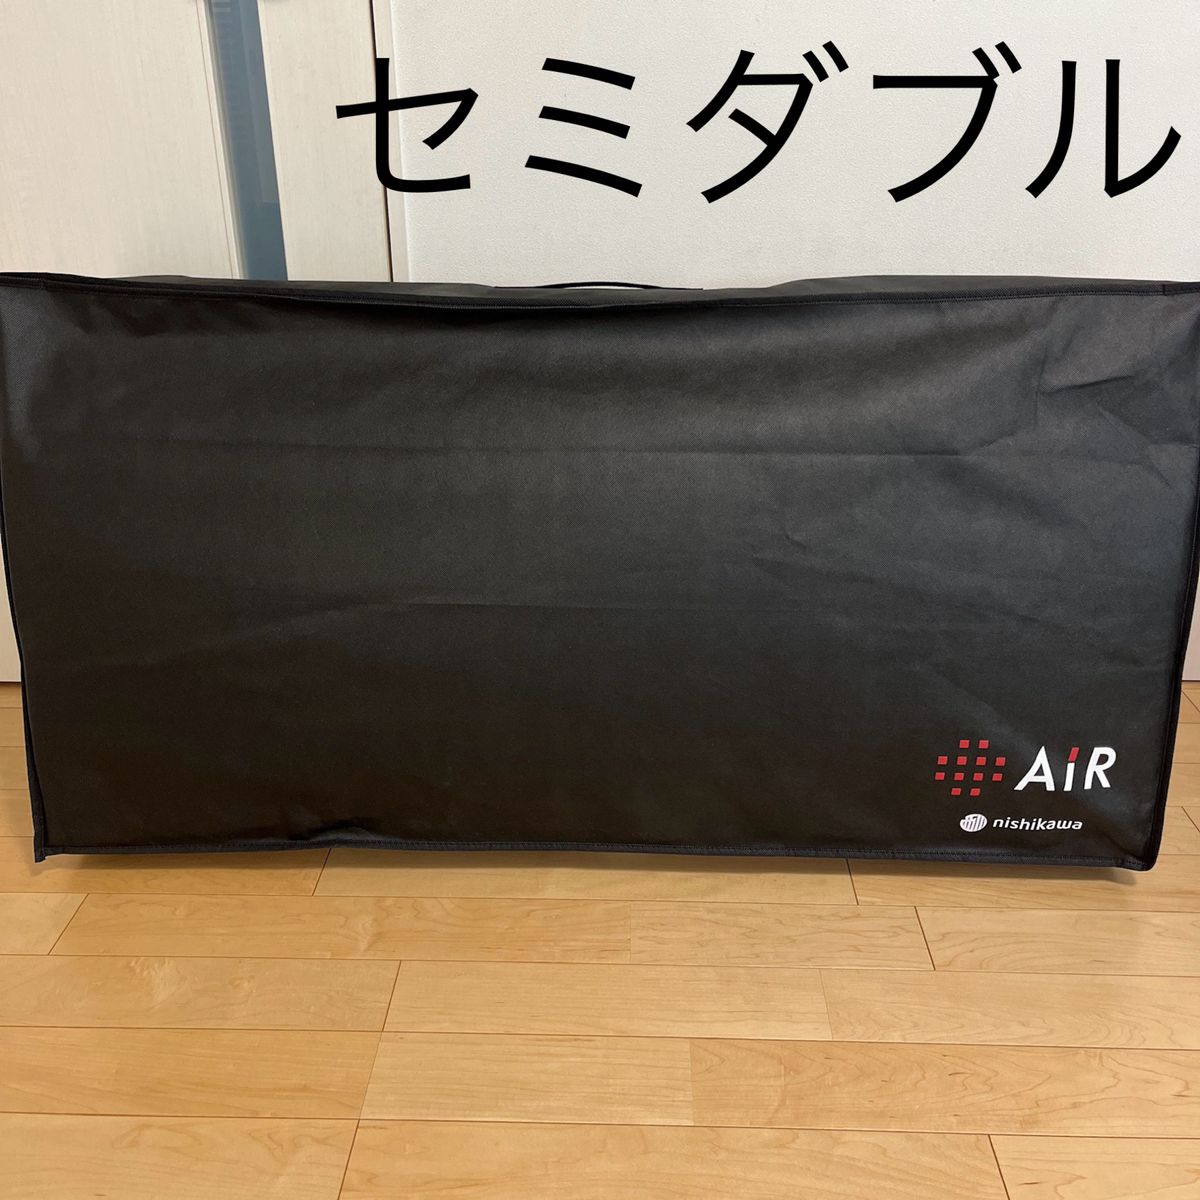 西川 AIR エアーSI マットレス レギュラータイプ セミダブル-